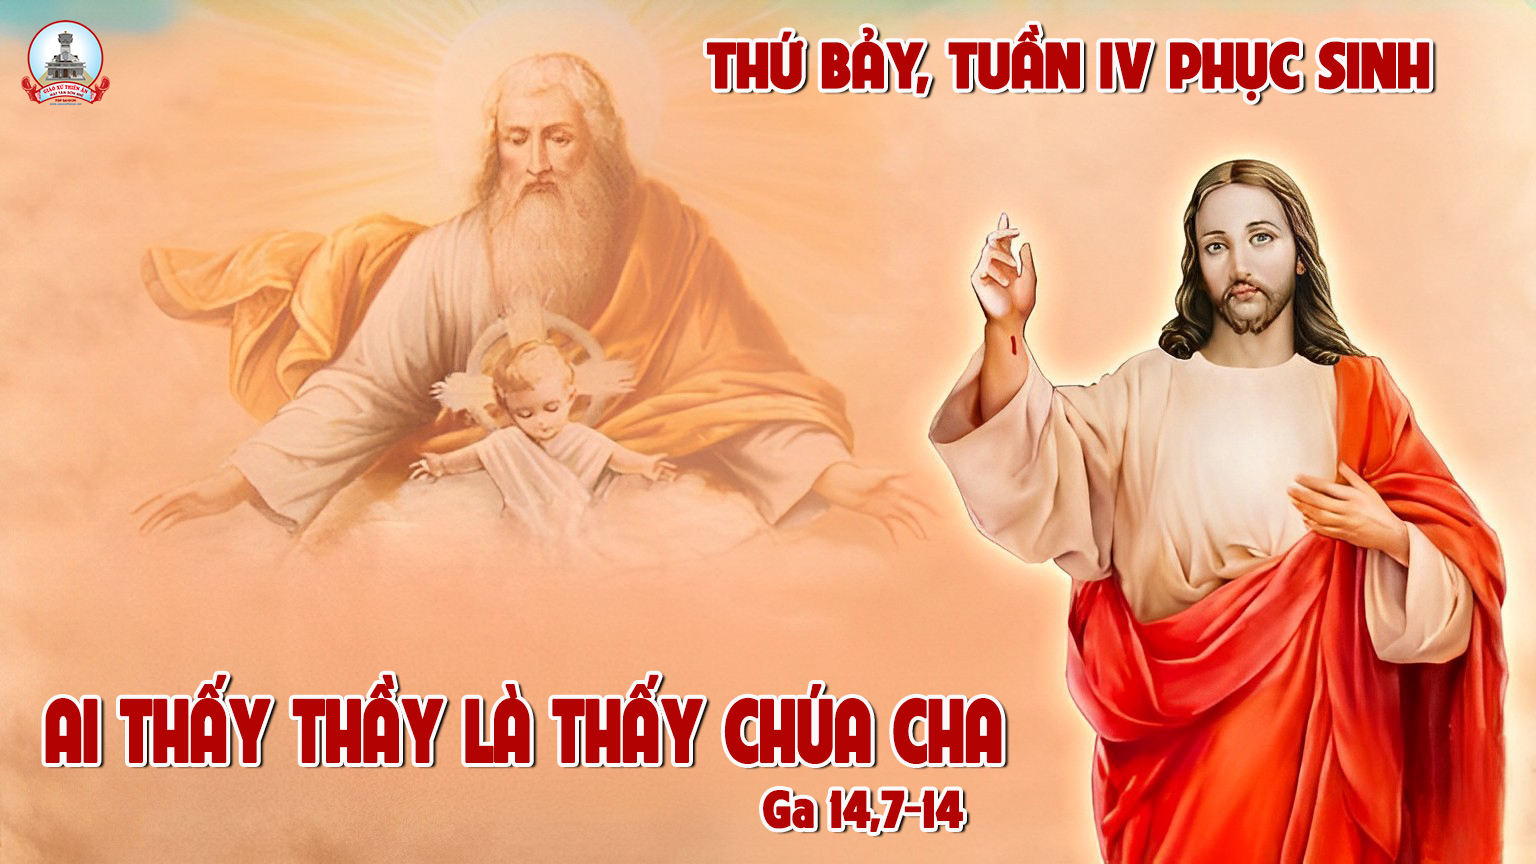 SUY NIỆM LỜI CHÚA THỨ BẢY TUẦN IV PHỤC SINH – Giao Xu Thien An